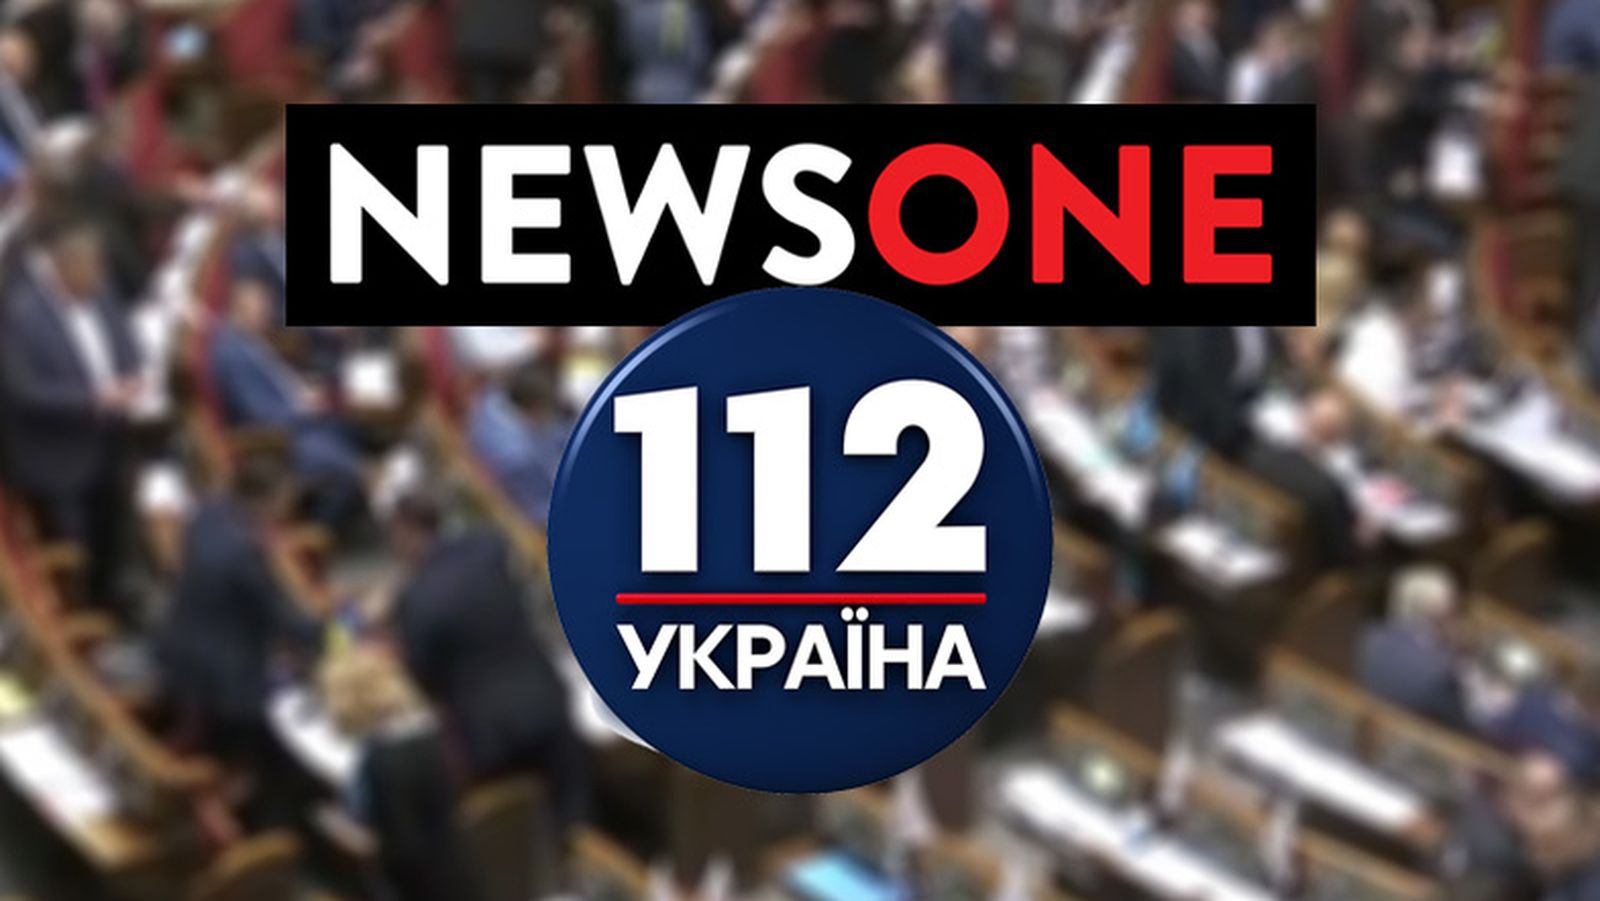 СБУ проверяет причастность юрлиц NewsOne и 112 Украина к терроризму